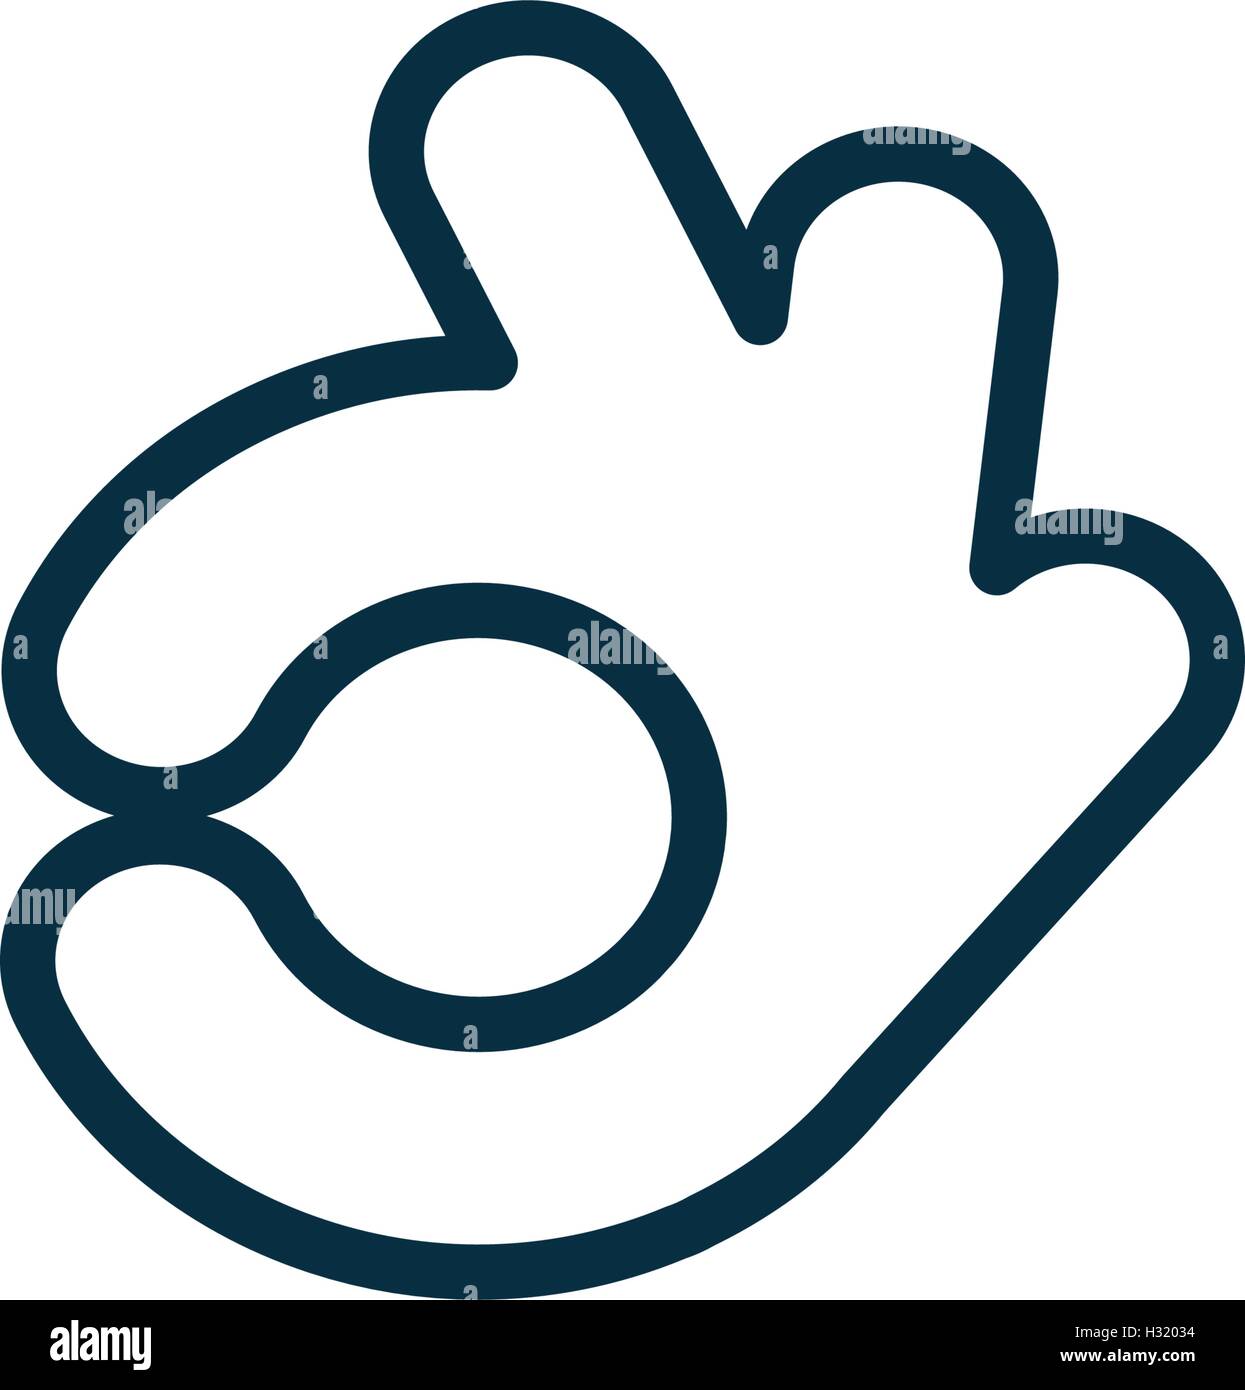 Isolierte abstrakte Rücken und weißen Farbe ok Logo. Menschliche Hand Kontur Schriftzug. Genehmigung Geste Zeichen. Symbol für positive Einschätzung. Vektor-illustration Stock Vektor